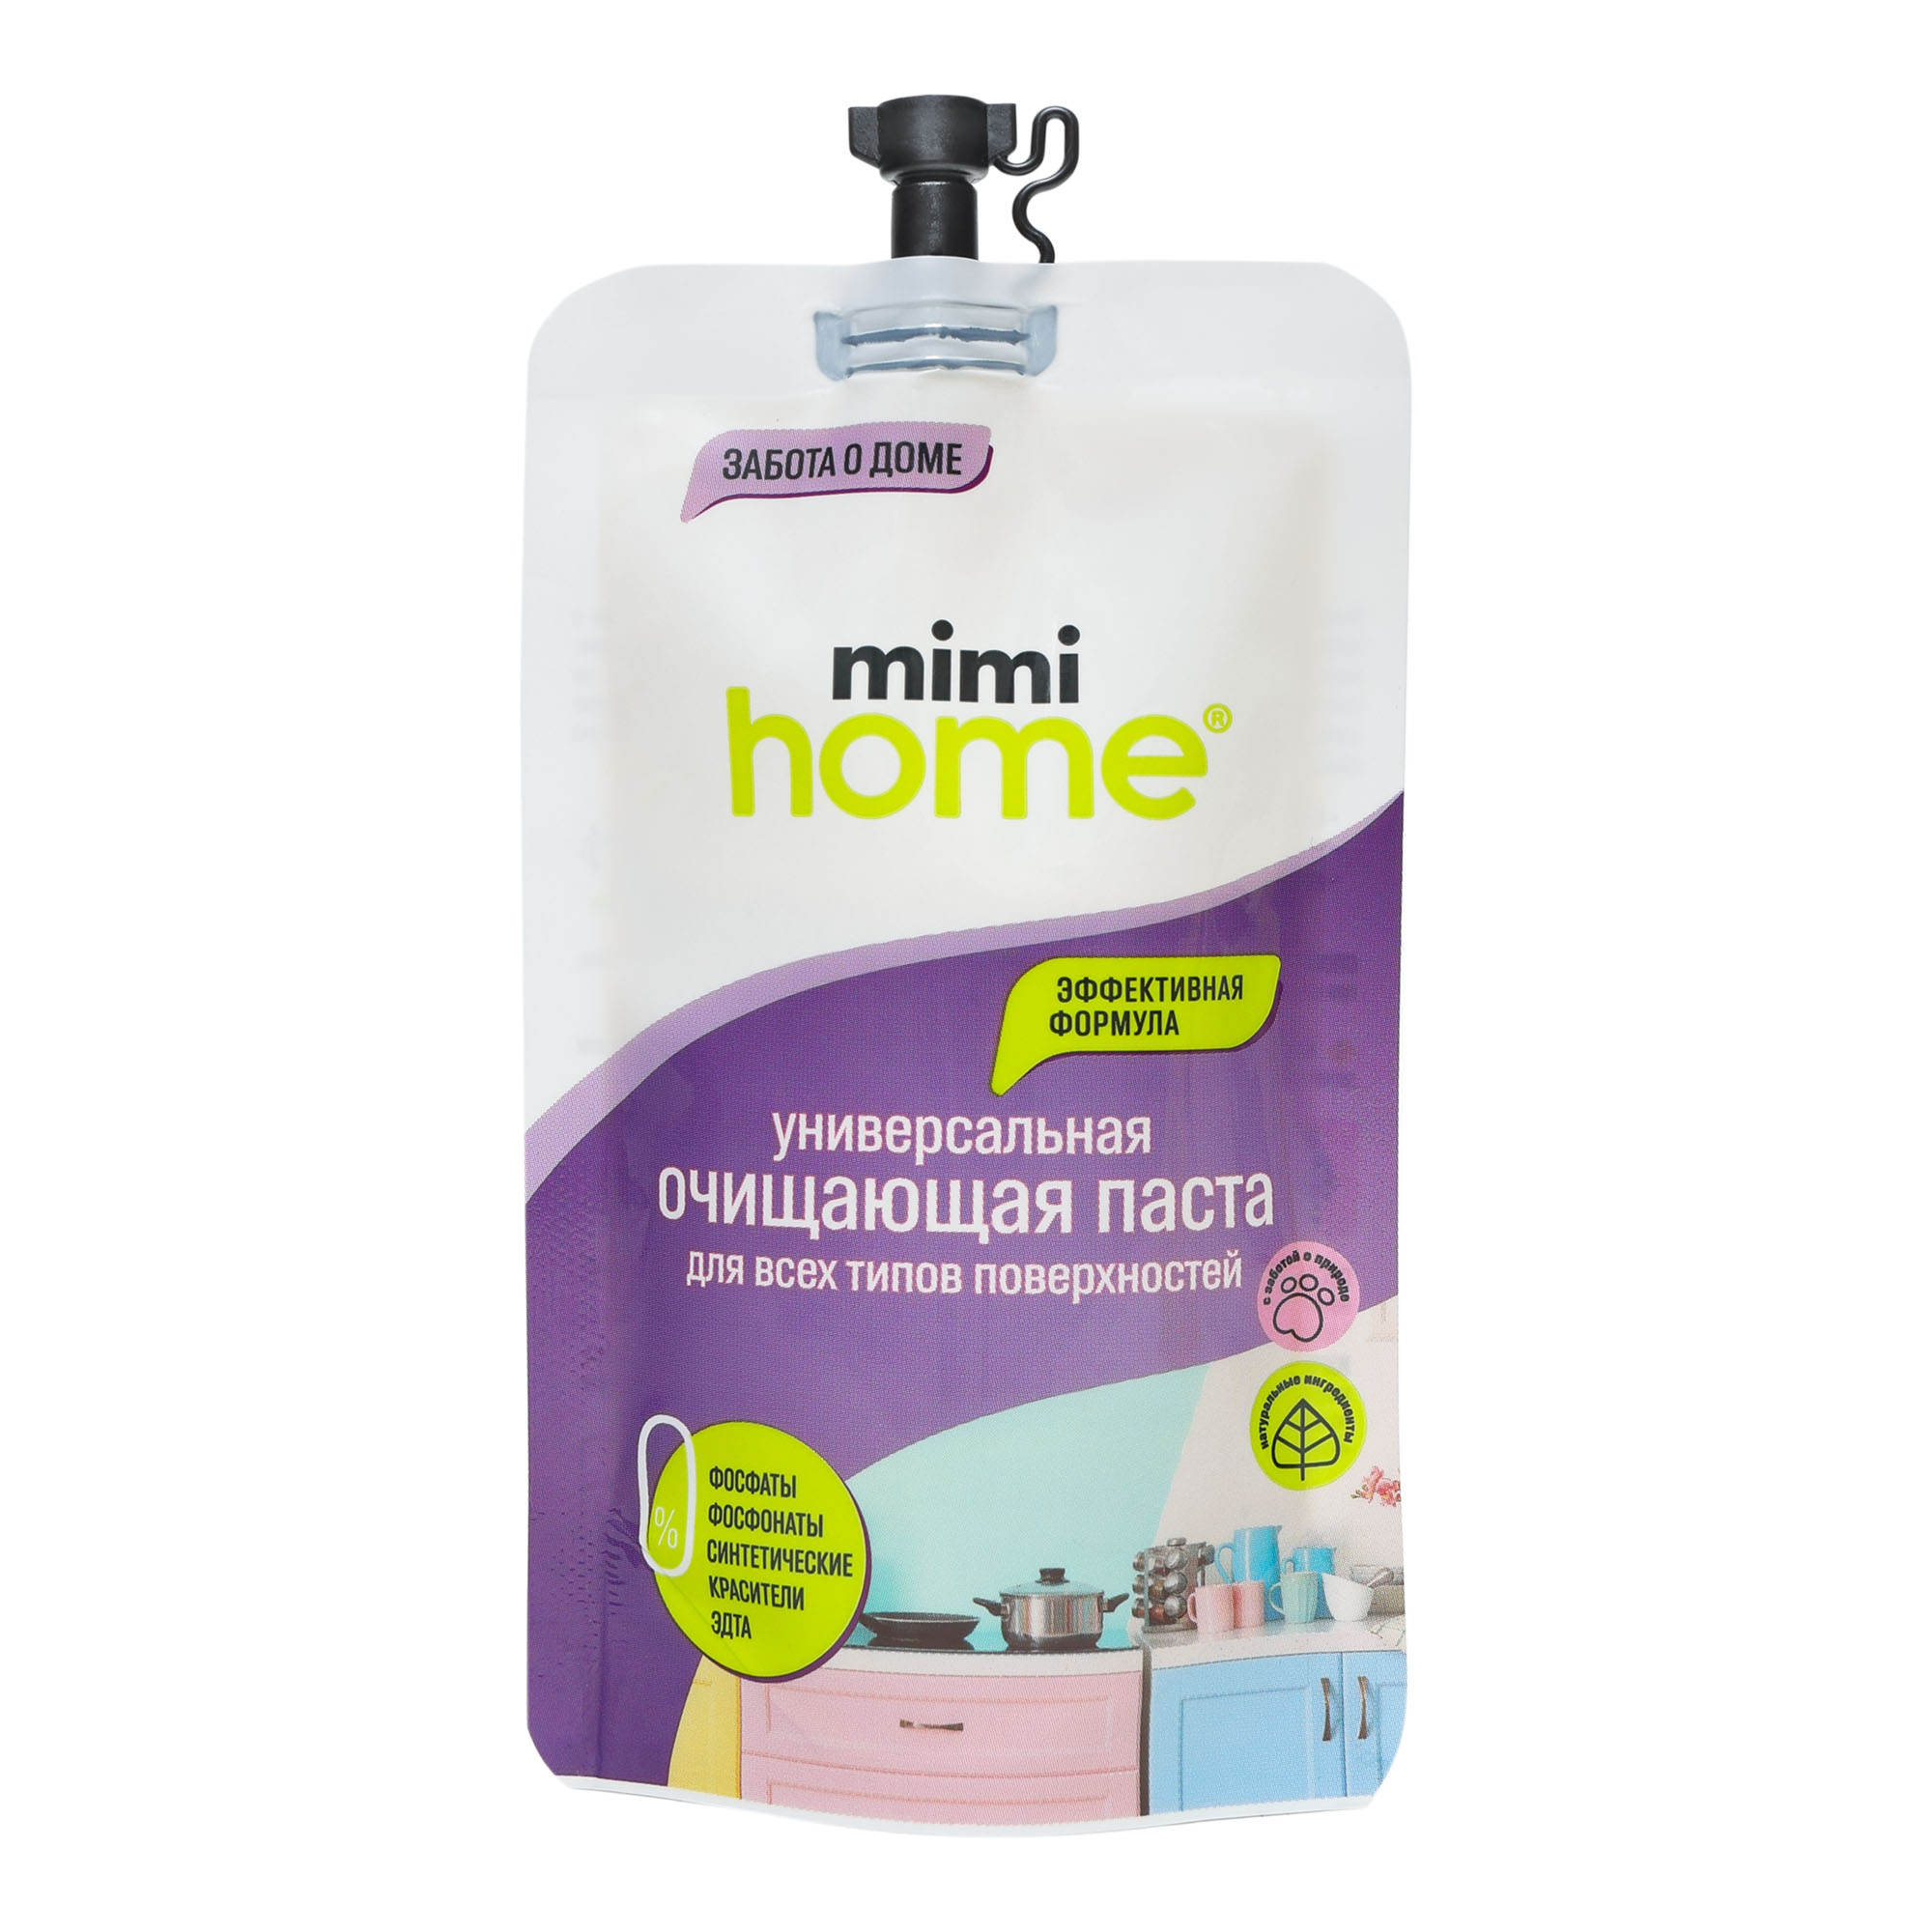 Чистящее средство Mimi Home для всех видов поверхностей 100 мл средство чистящее mimi home для духовок и свч 370 мл